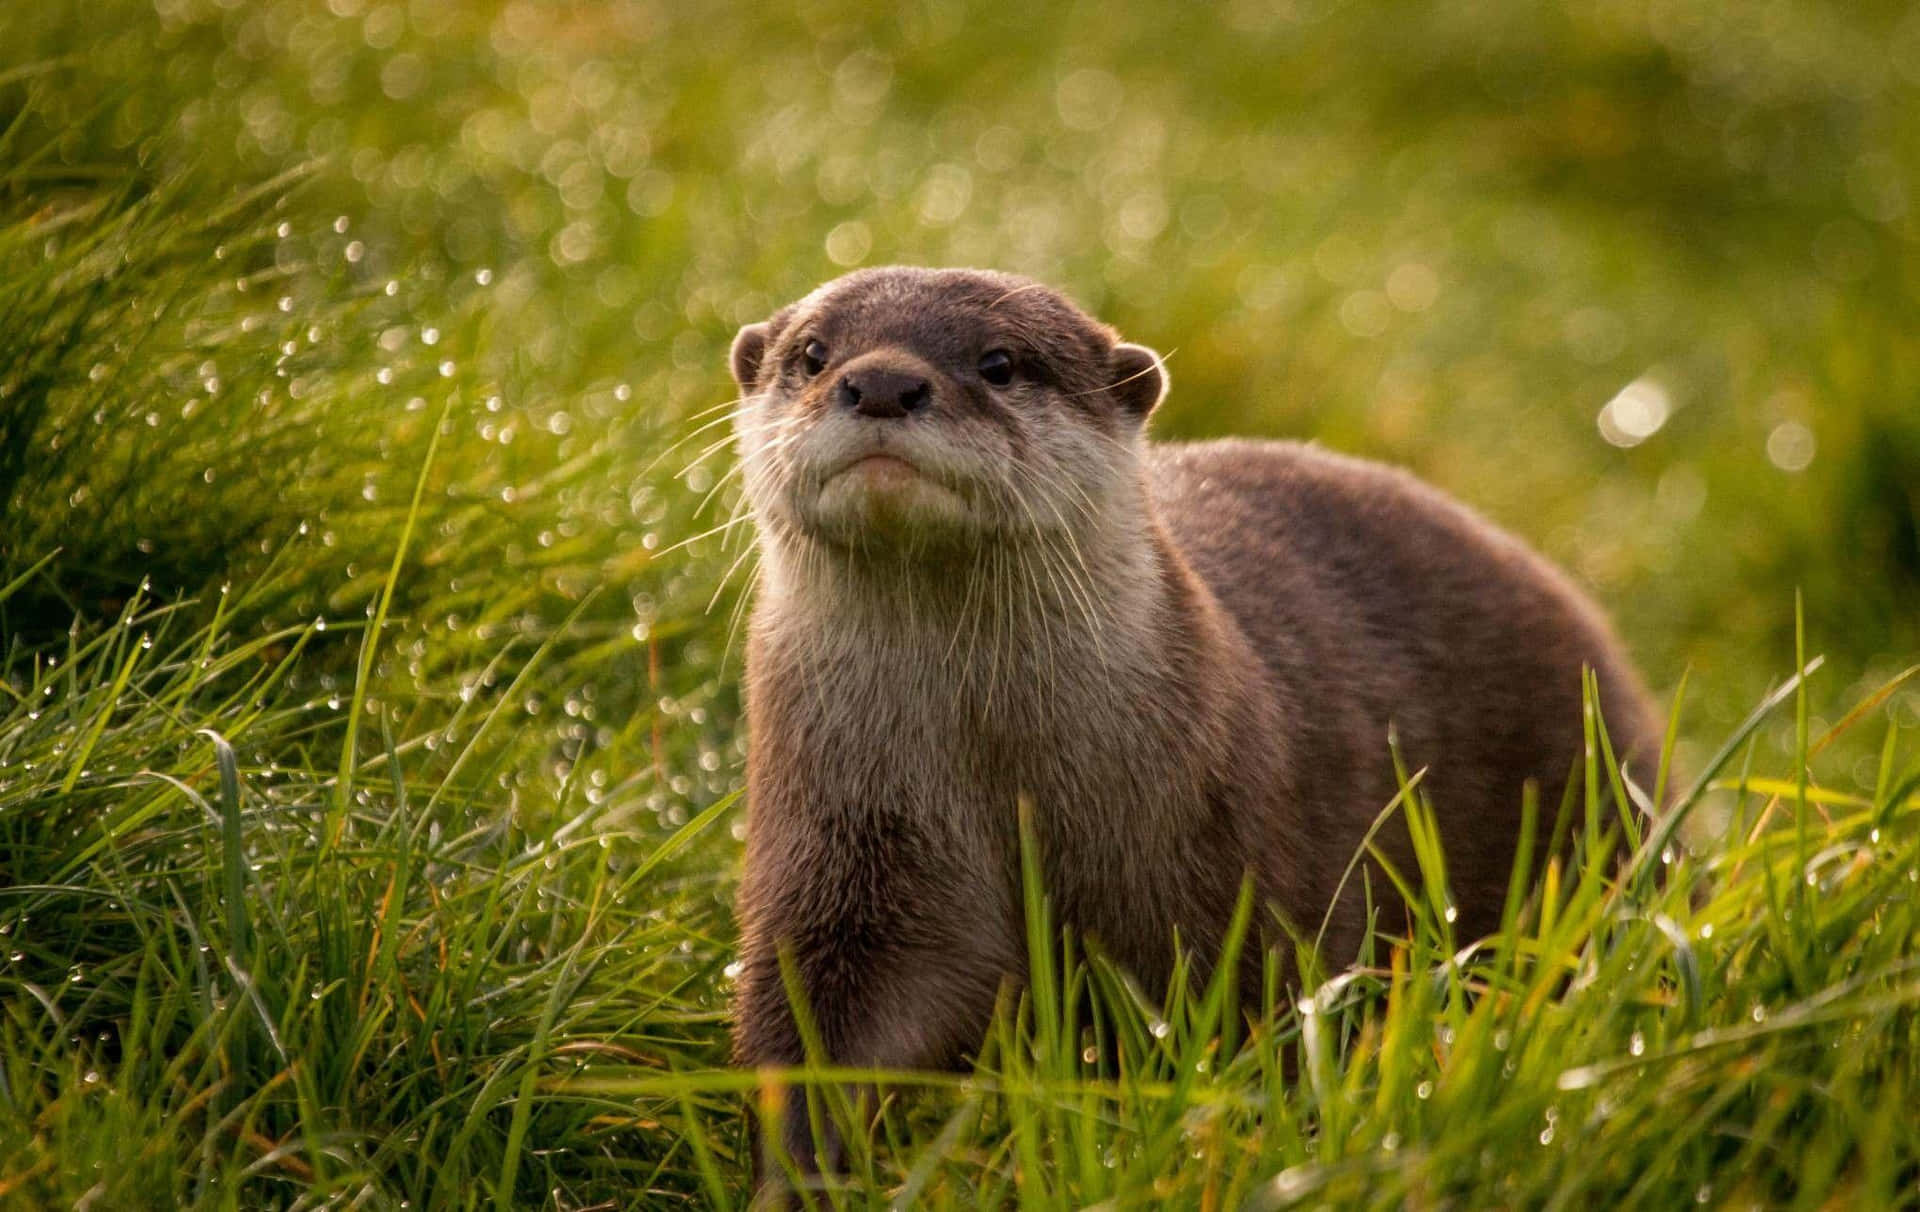 Cute Otter Billeder 2039 X 1287